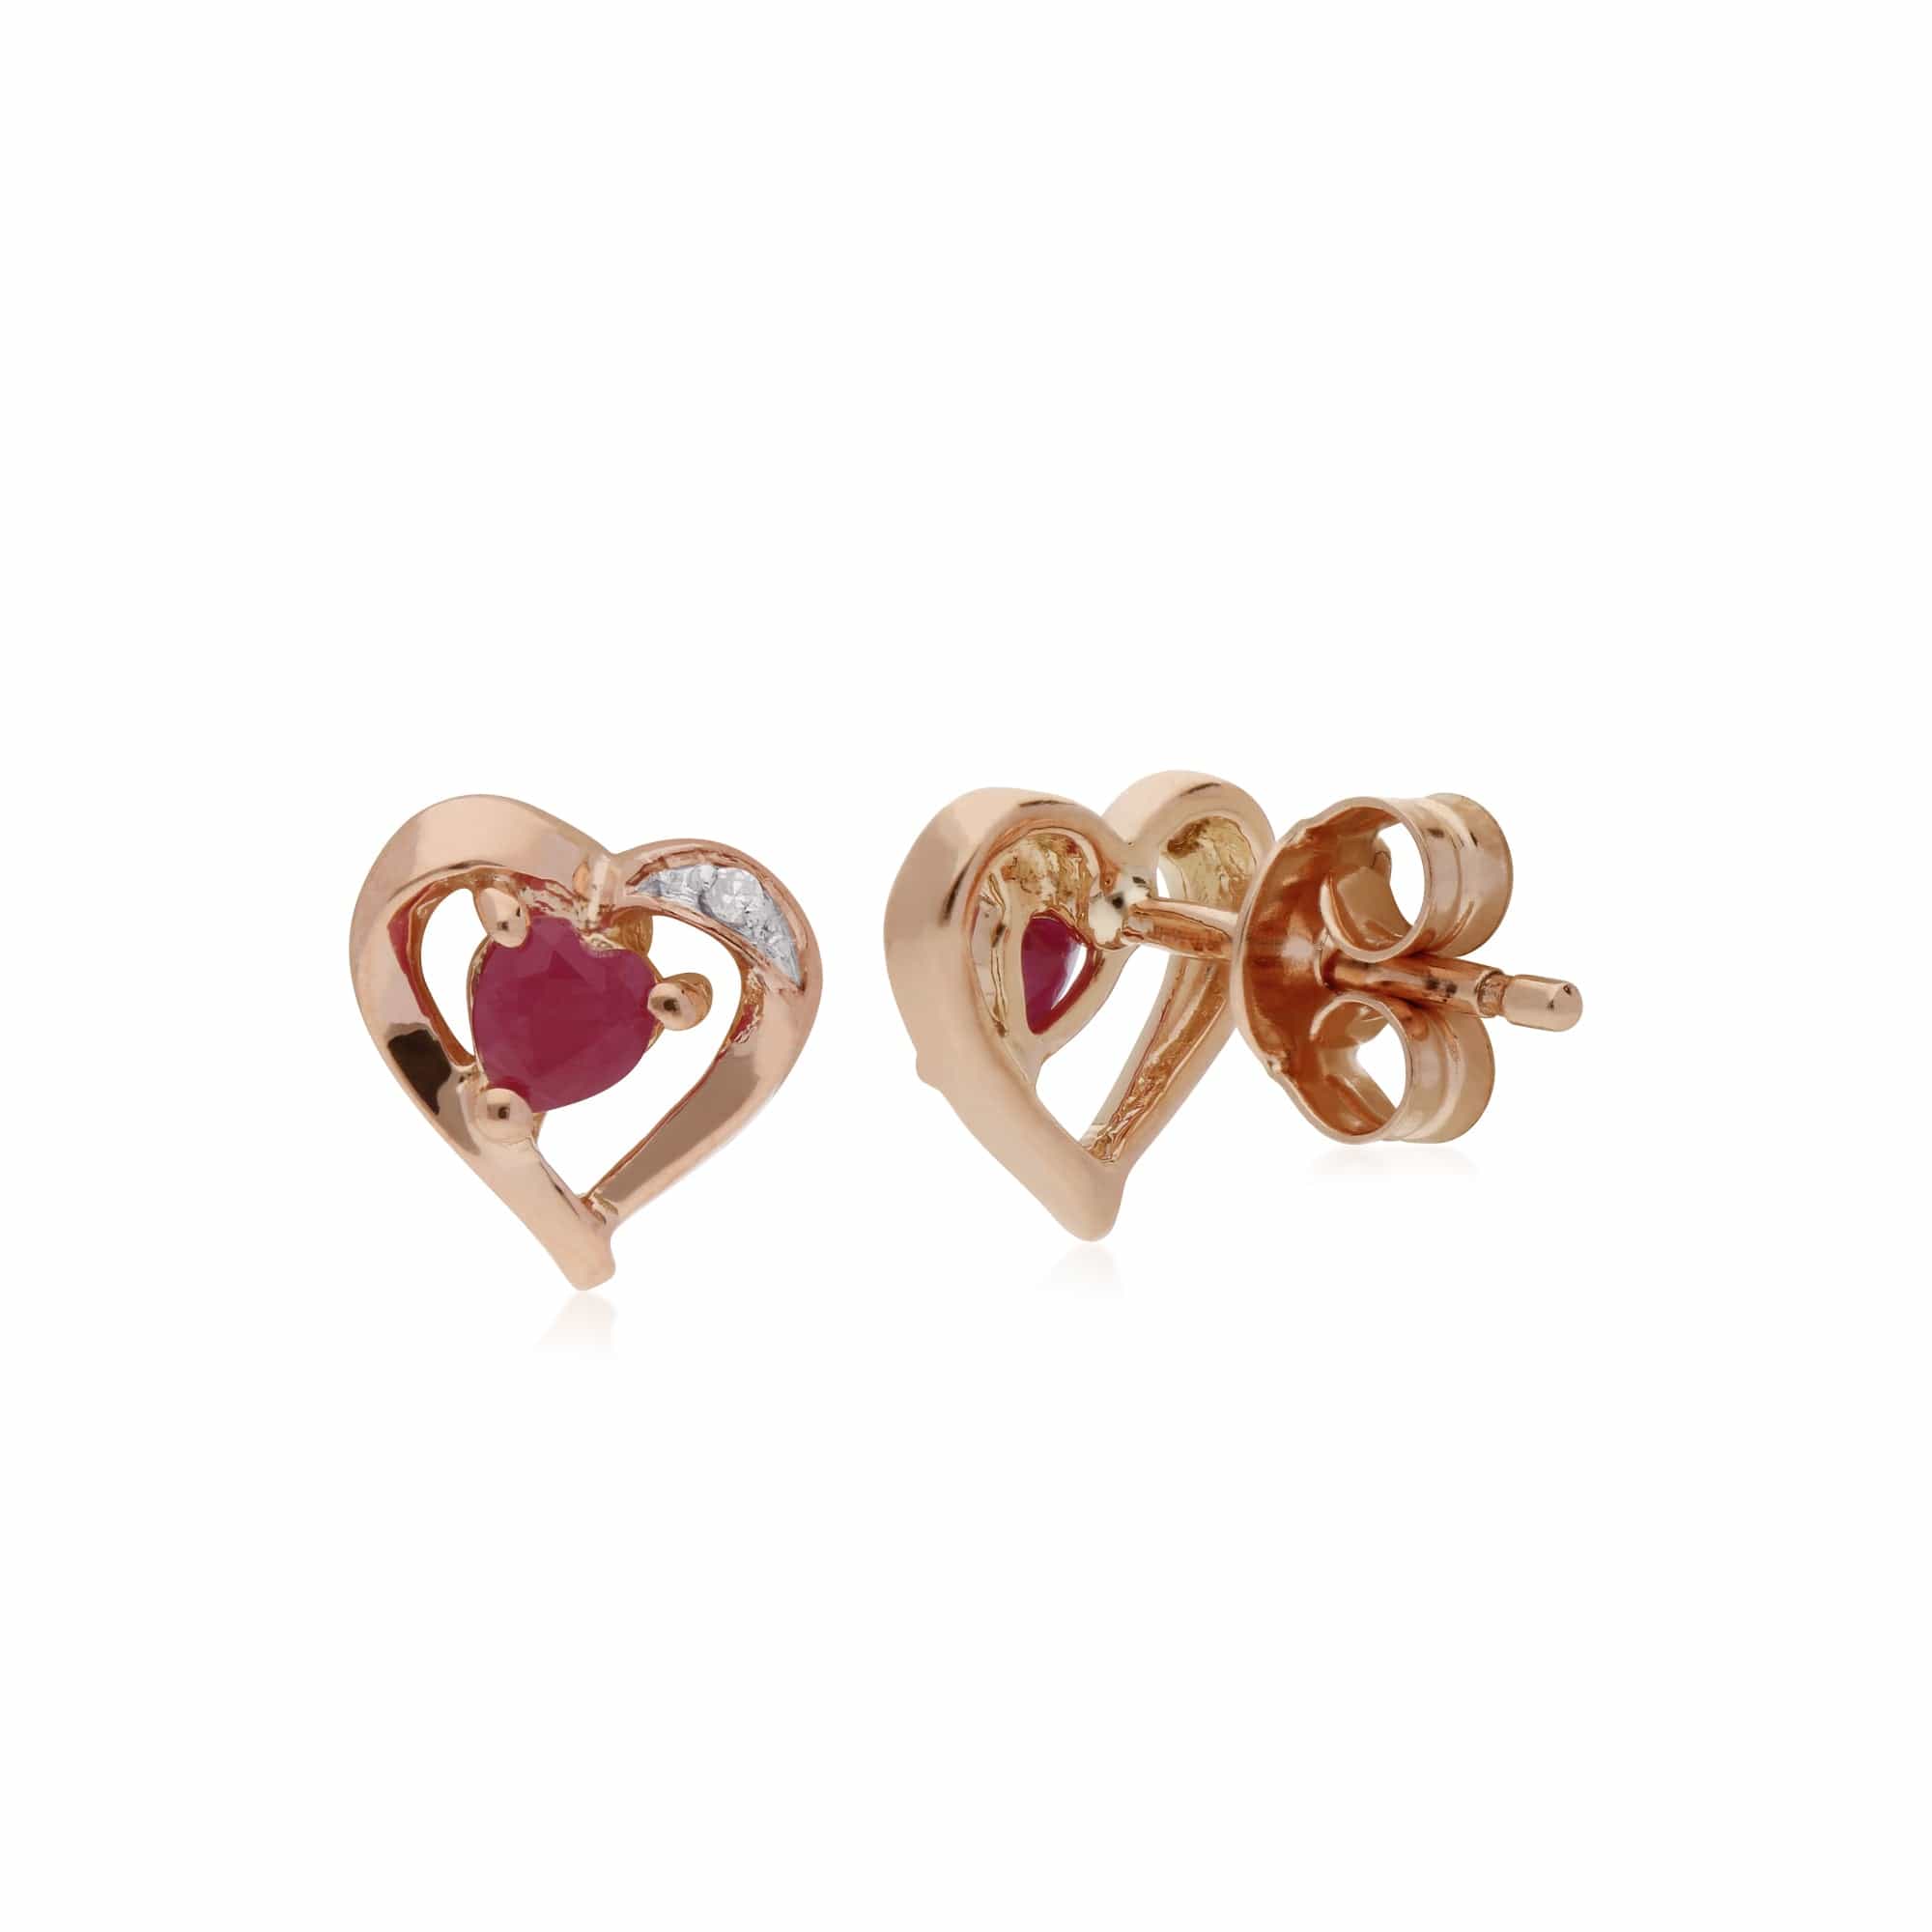 Classic Heart Ruby & Diamond Love Heart Stud Earrings in 9ct Rose Gold - Gemondo